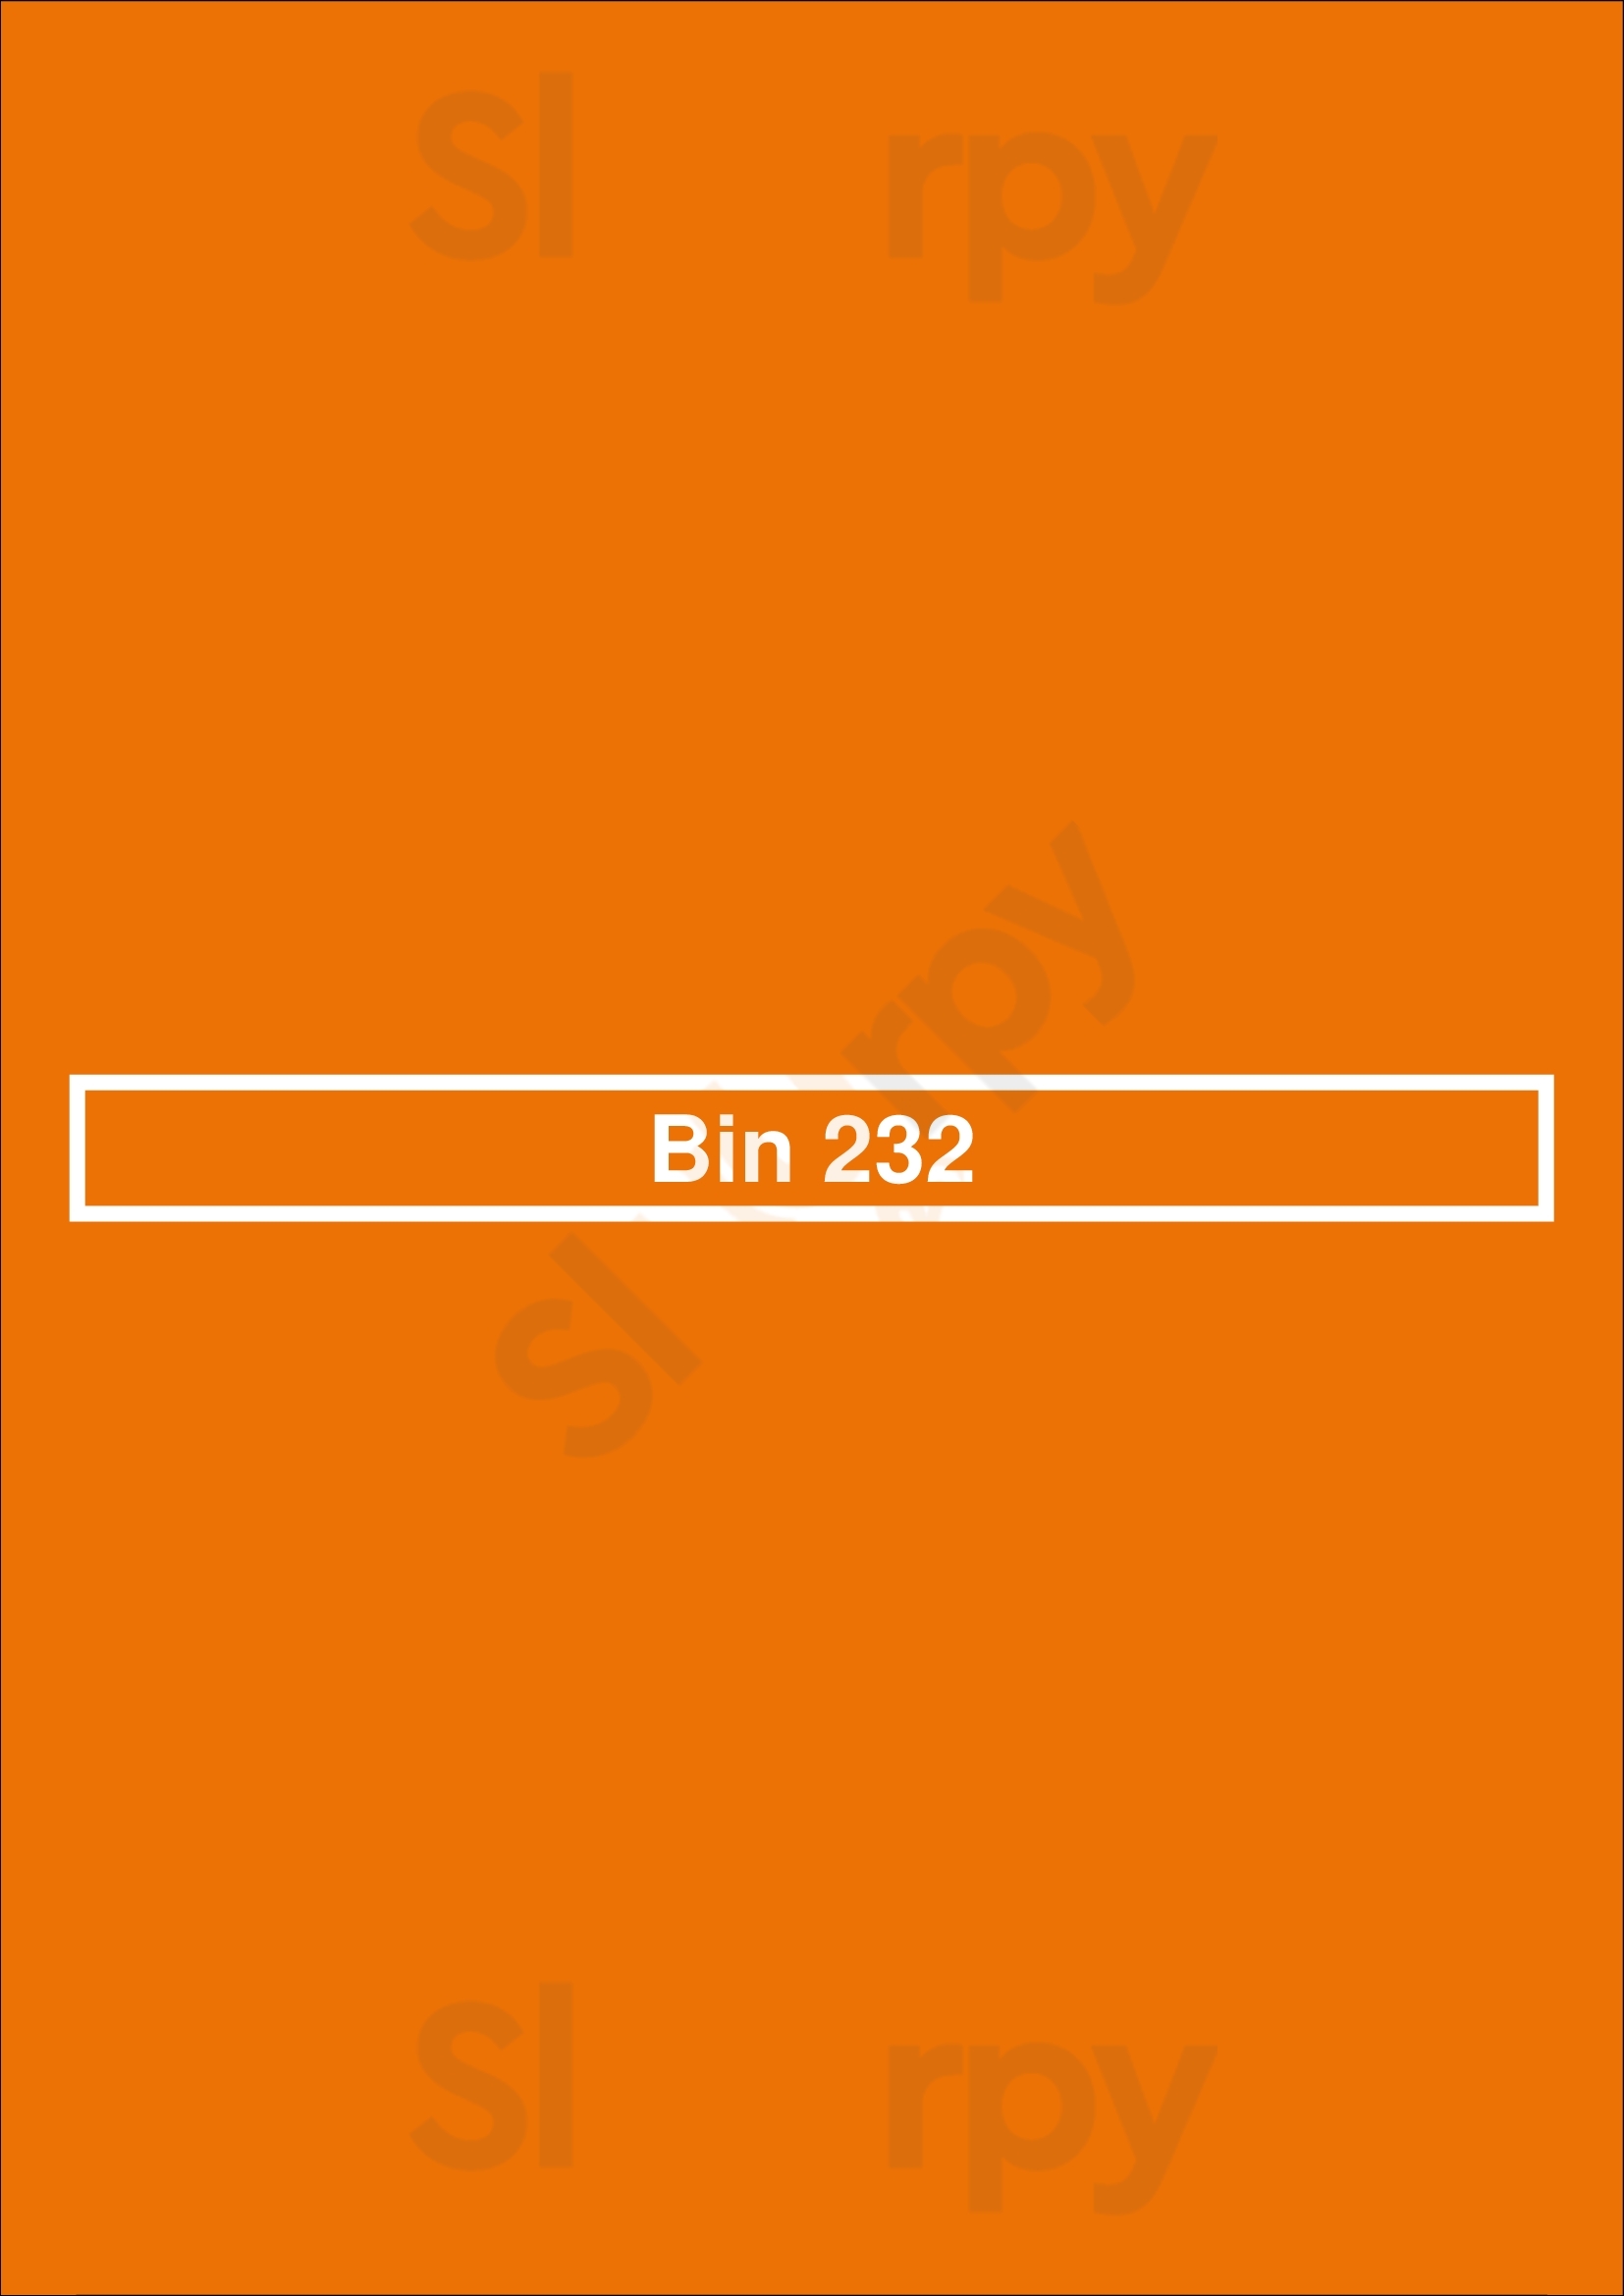 Bin 232 Broadbeach Menu - 1